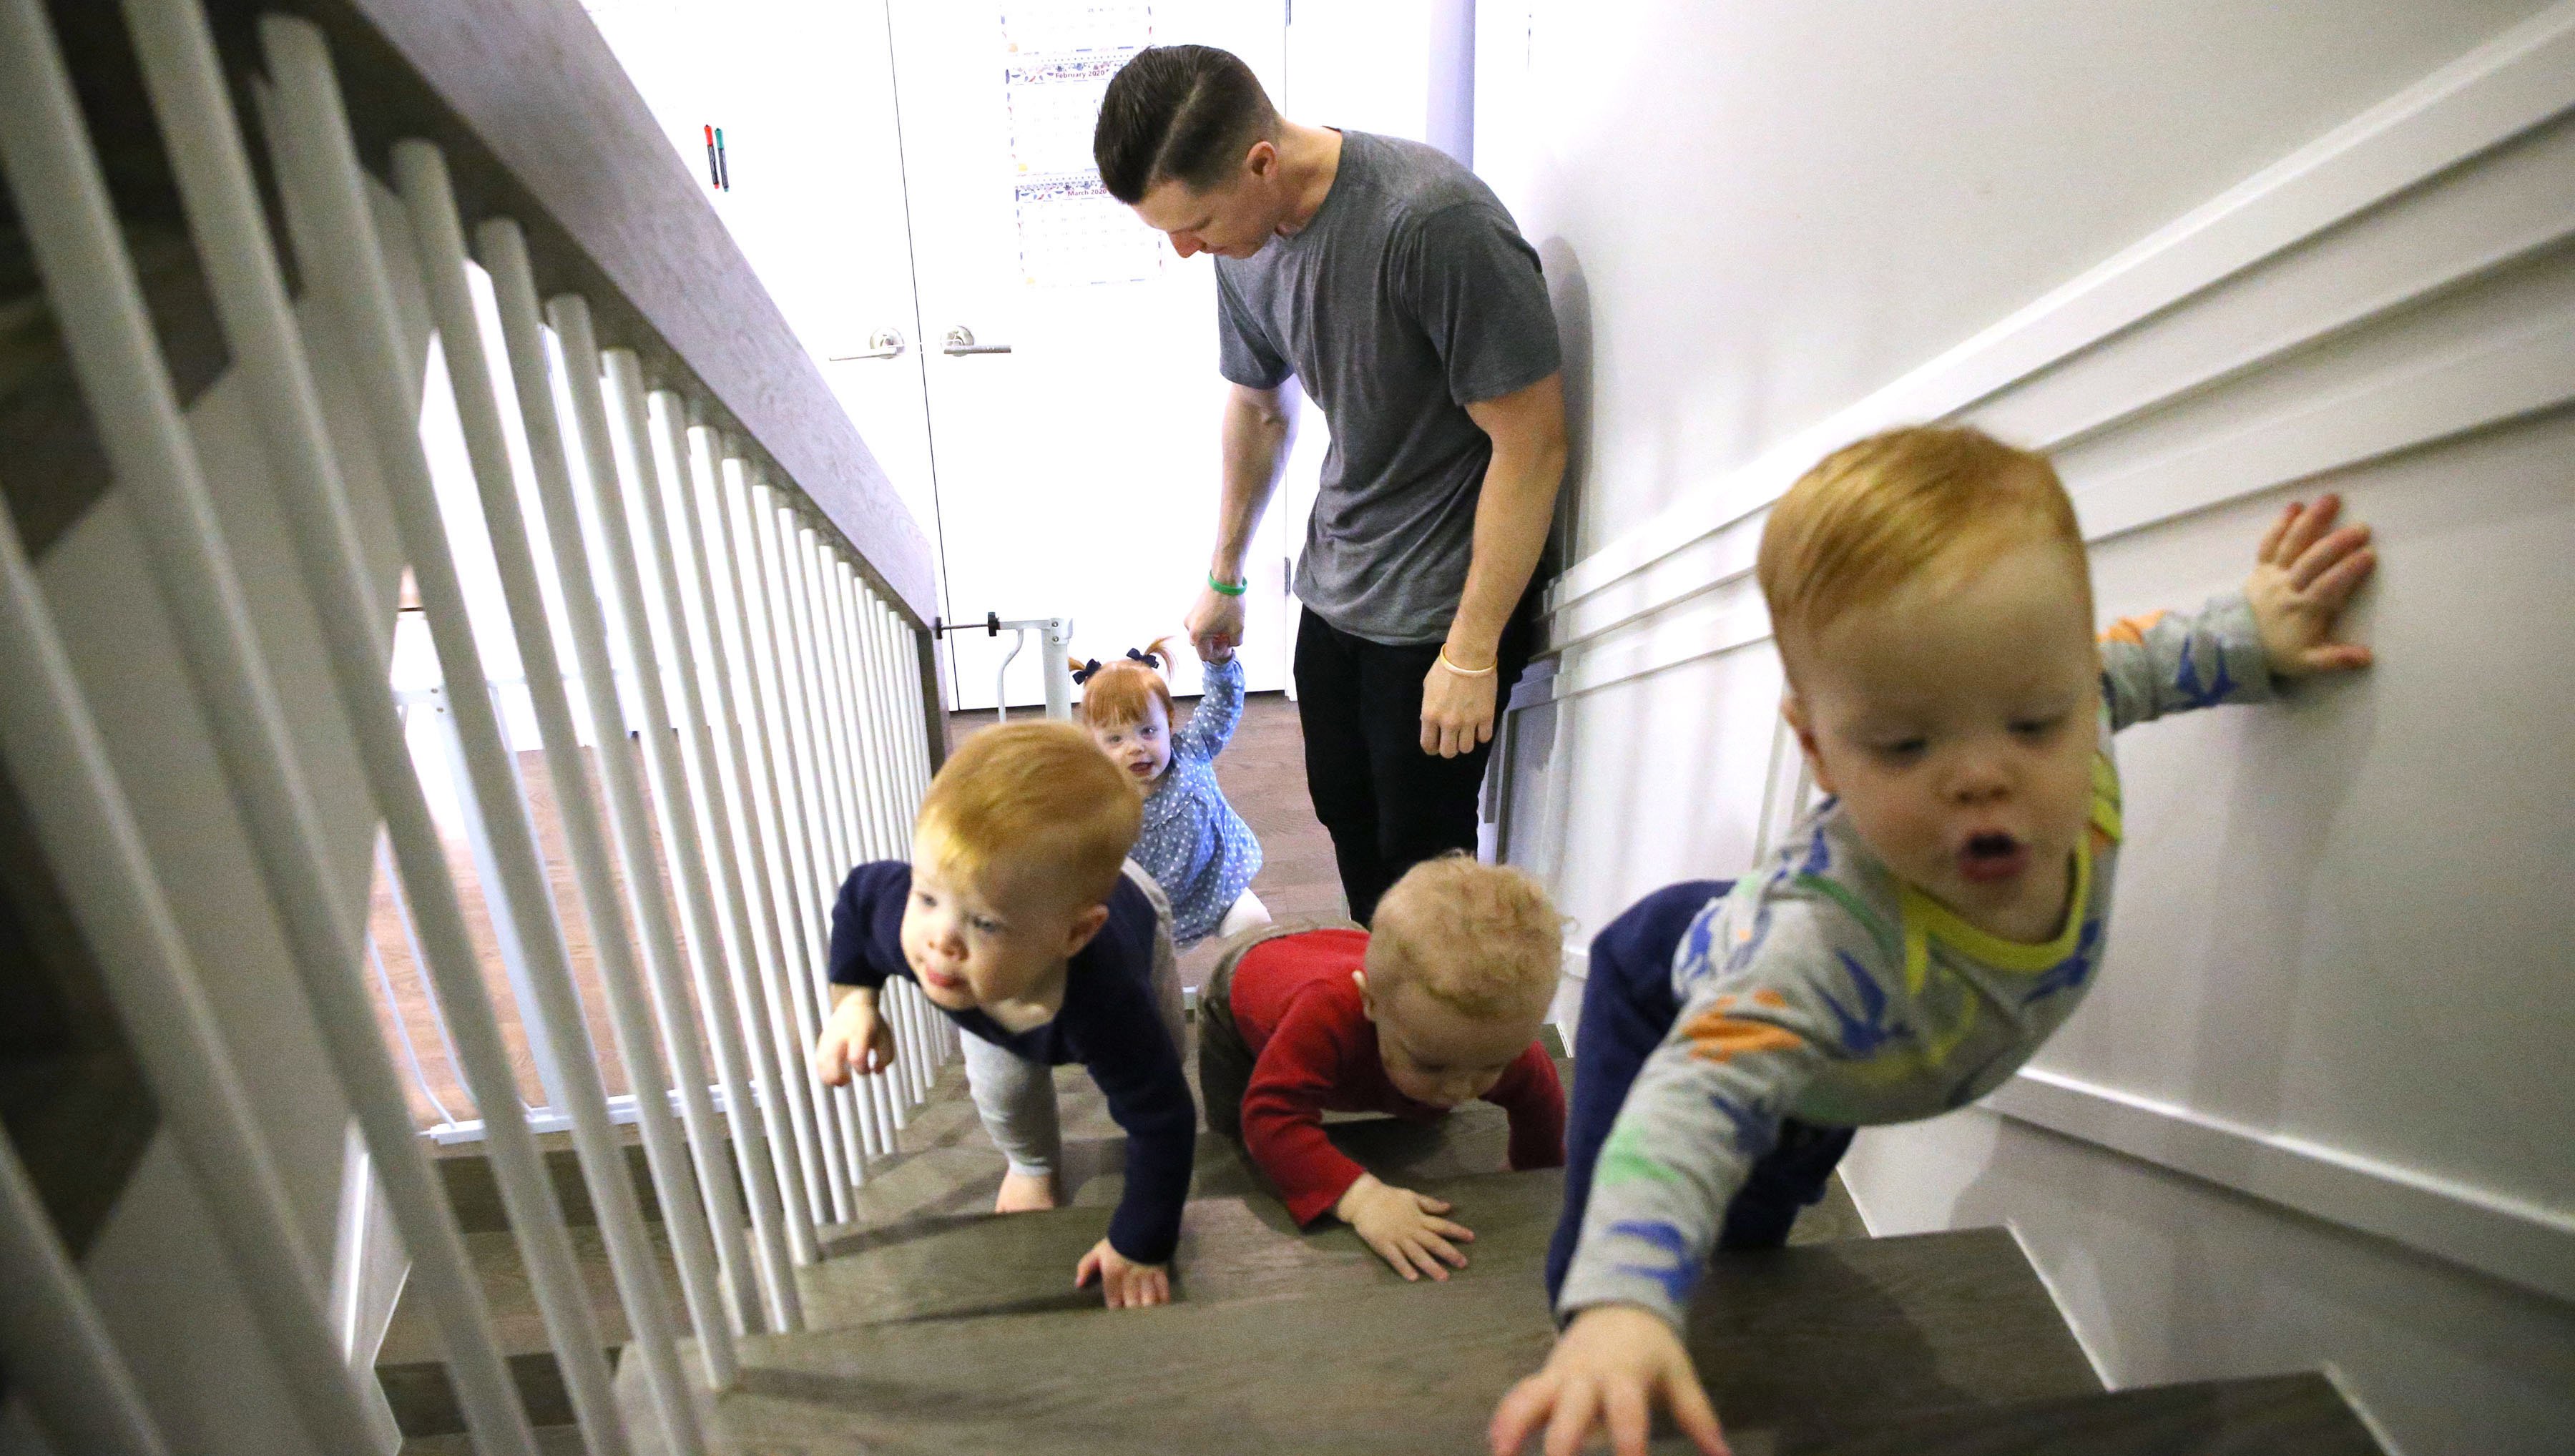 Charlie Whitmer und seine Kinder laufen die Treppe hinauf. | Quelle: Getty Images